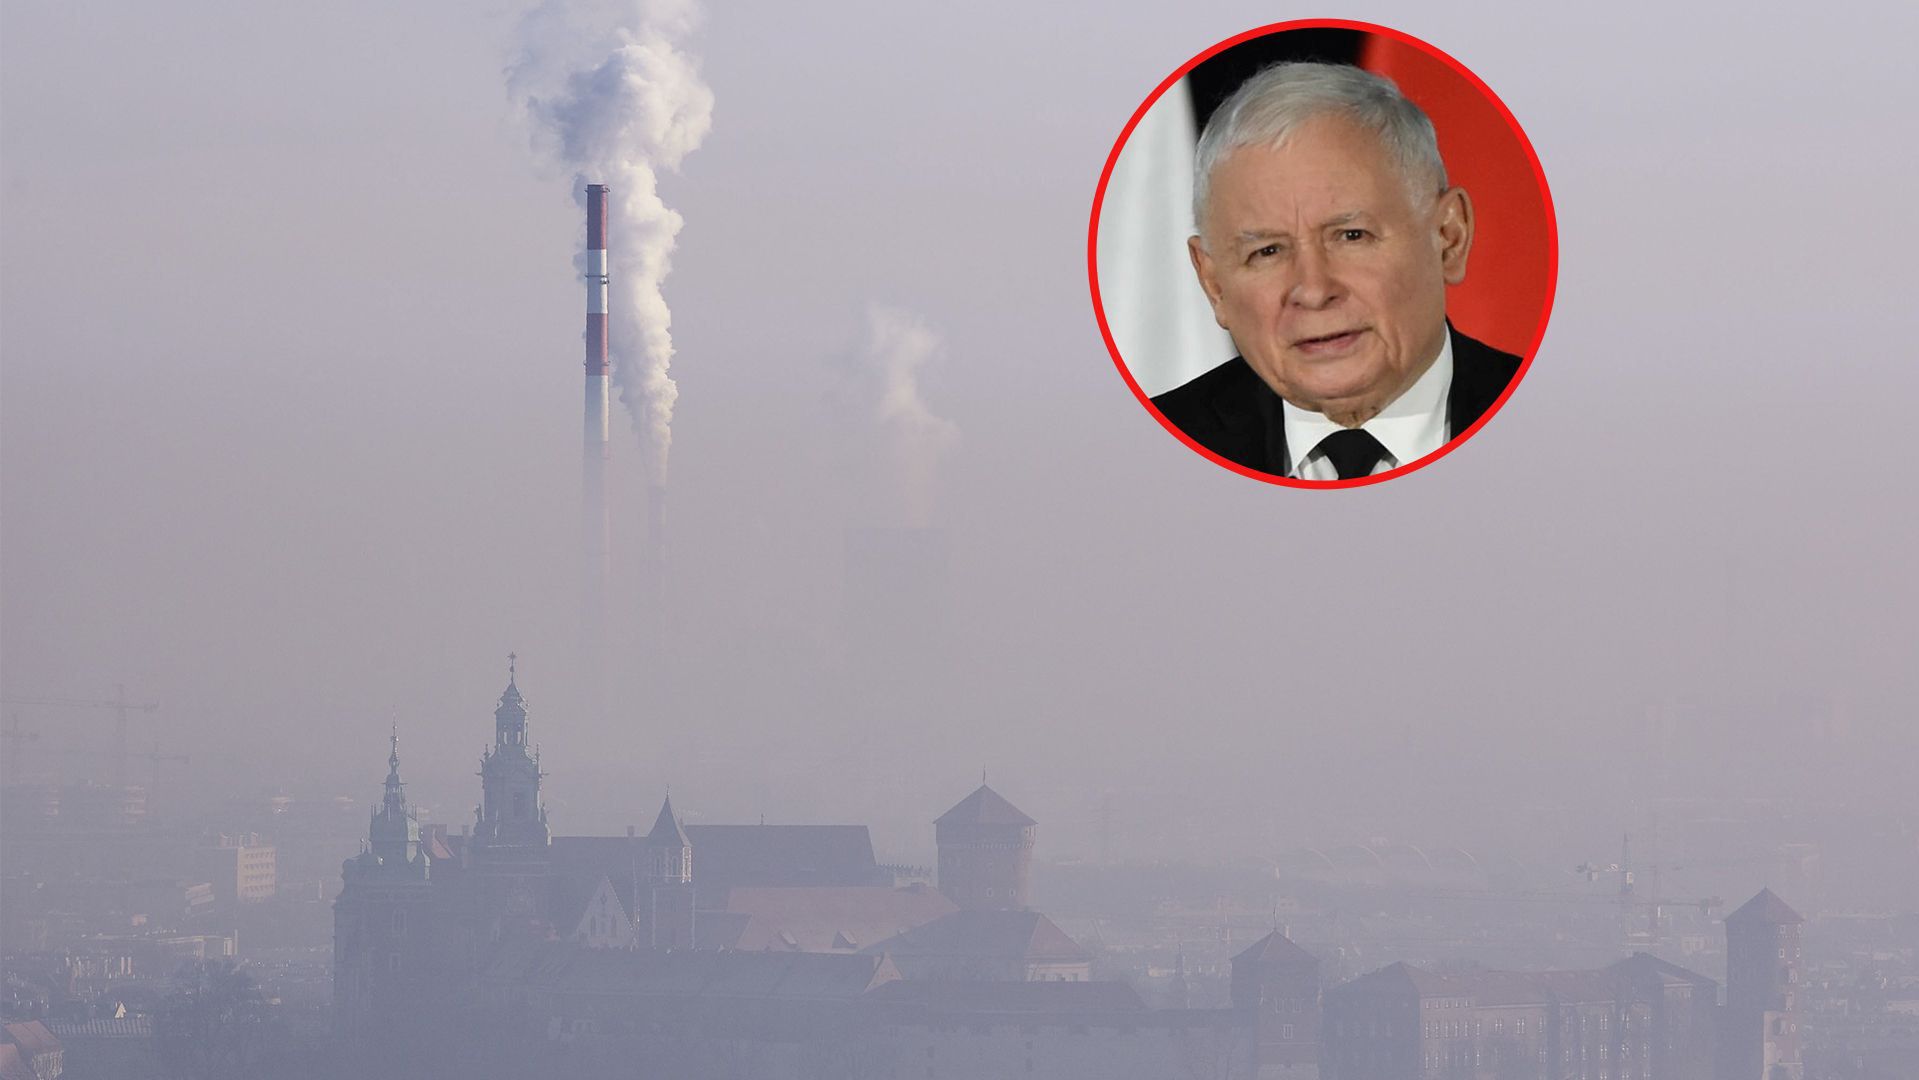 Polskie miasta zmagają się ze smogiem. Zachęta, że "trzeba w tej chwili palić wszystkim (...)", nie pomaga w rozwiązniu problemu